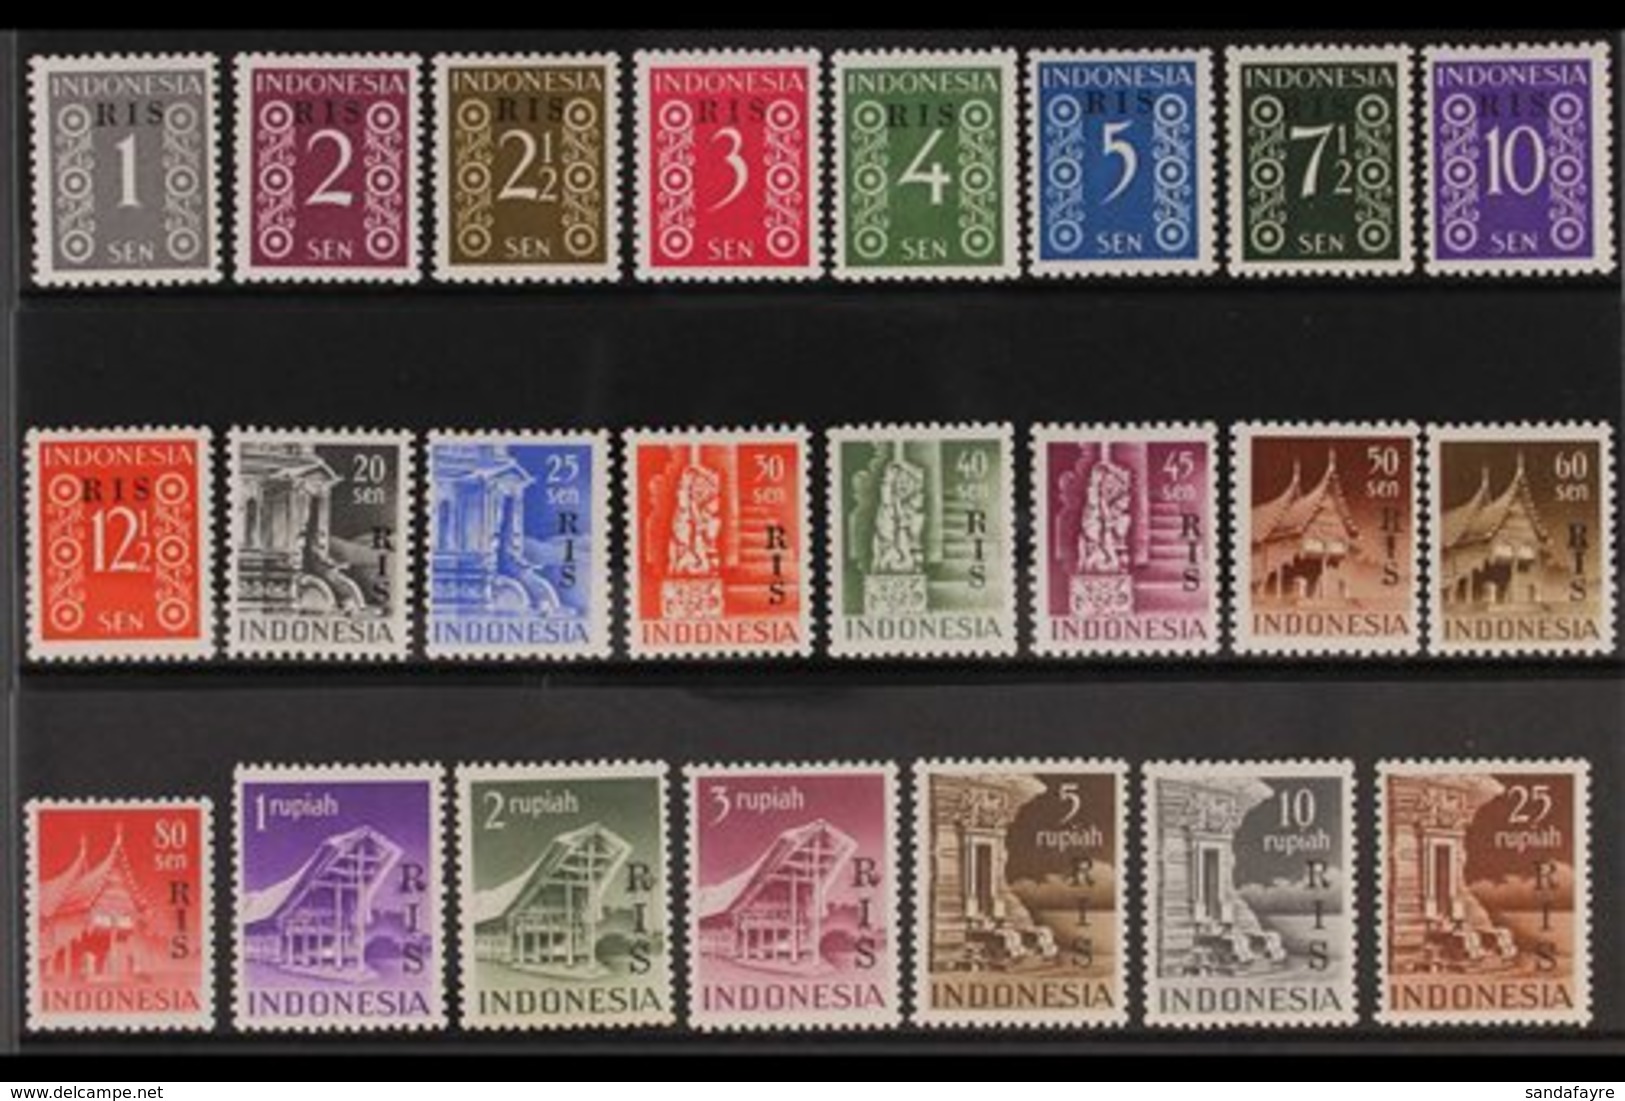 1950 Netherland Indies "R I S" Overprinted Complete Set, SG 579/601, Scott 335/58, Never Hinged Mint (23 Stamps) For Mor - Indonésie